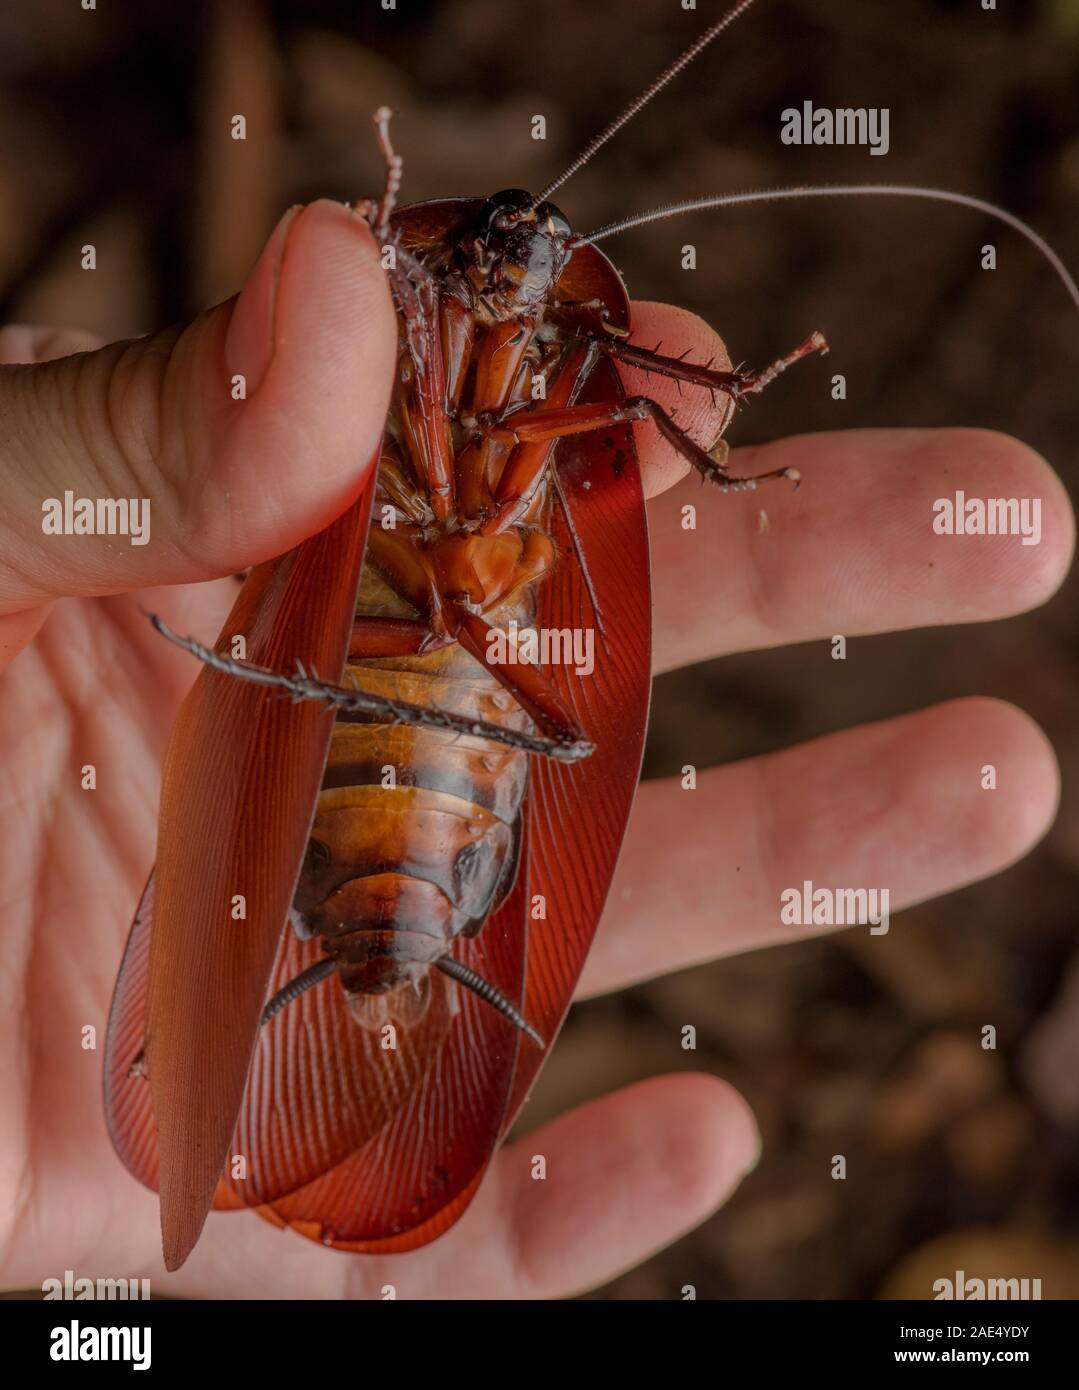 Enorme scarafaggio immagini e fotografie stock ad alta risoluzione - Alamy